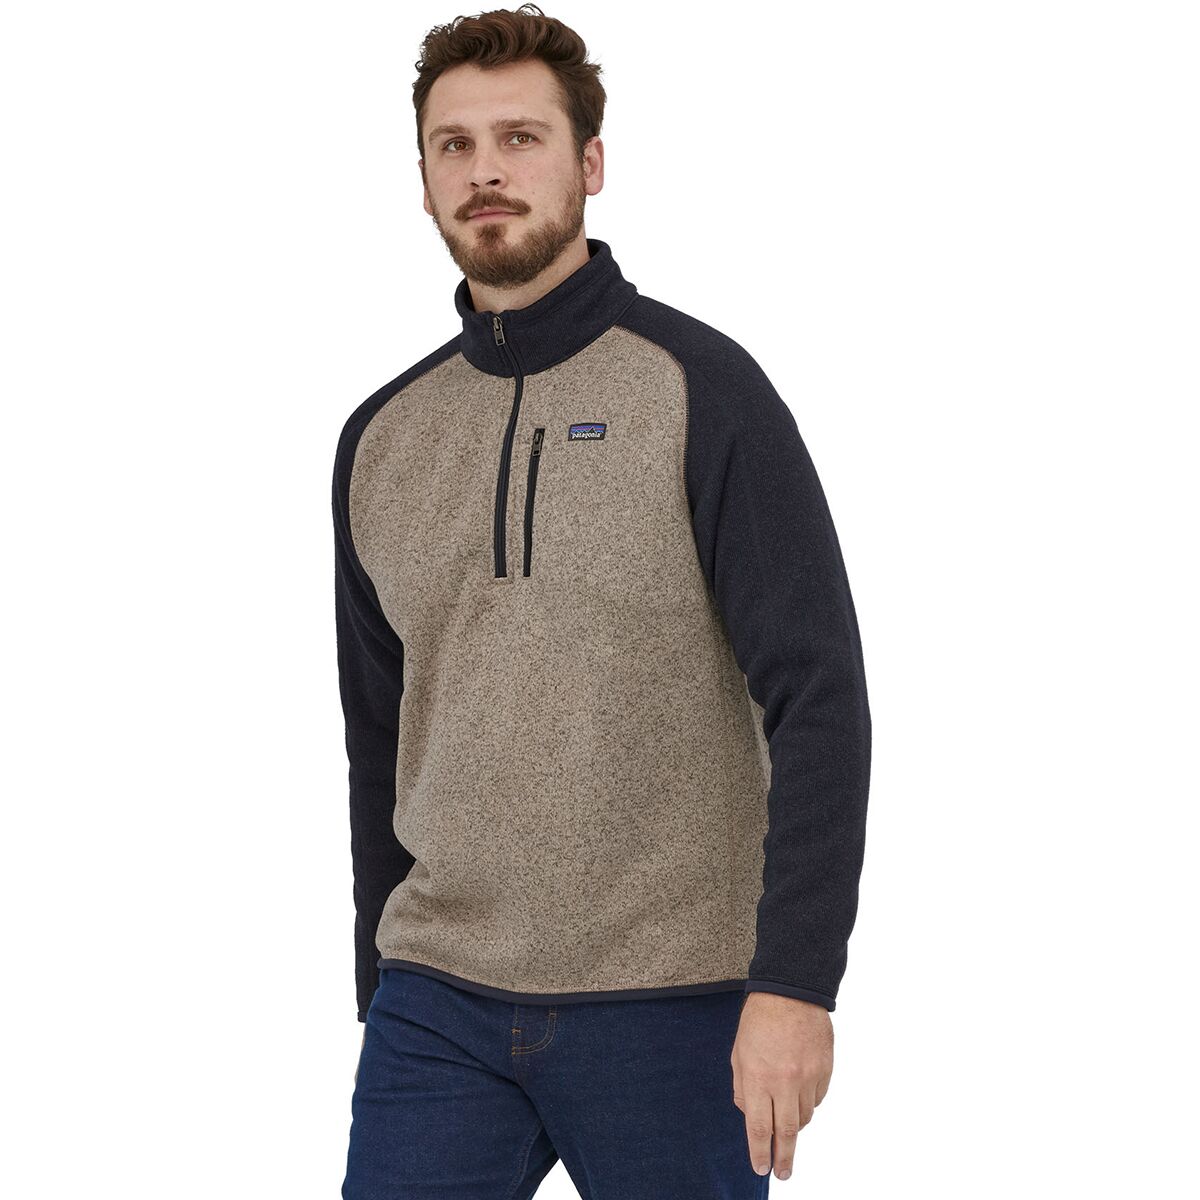 Better Sweater 1/4-Zip Fleece Jacket - Men's | Backcountry